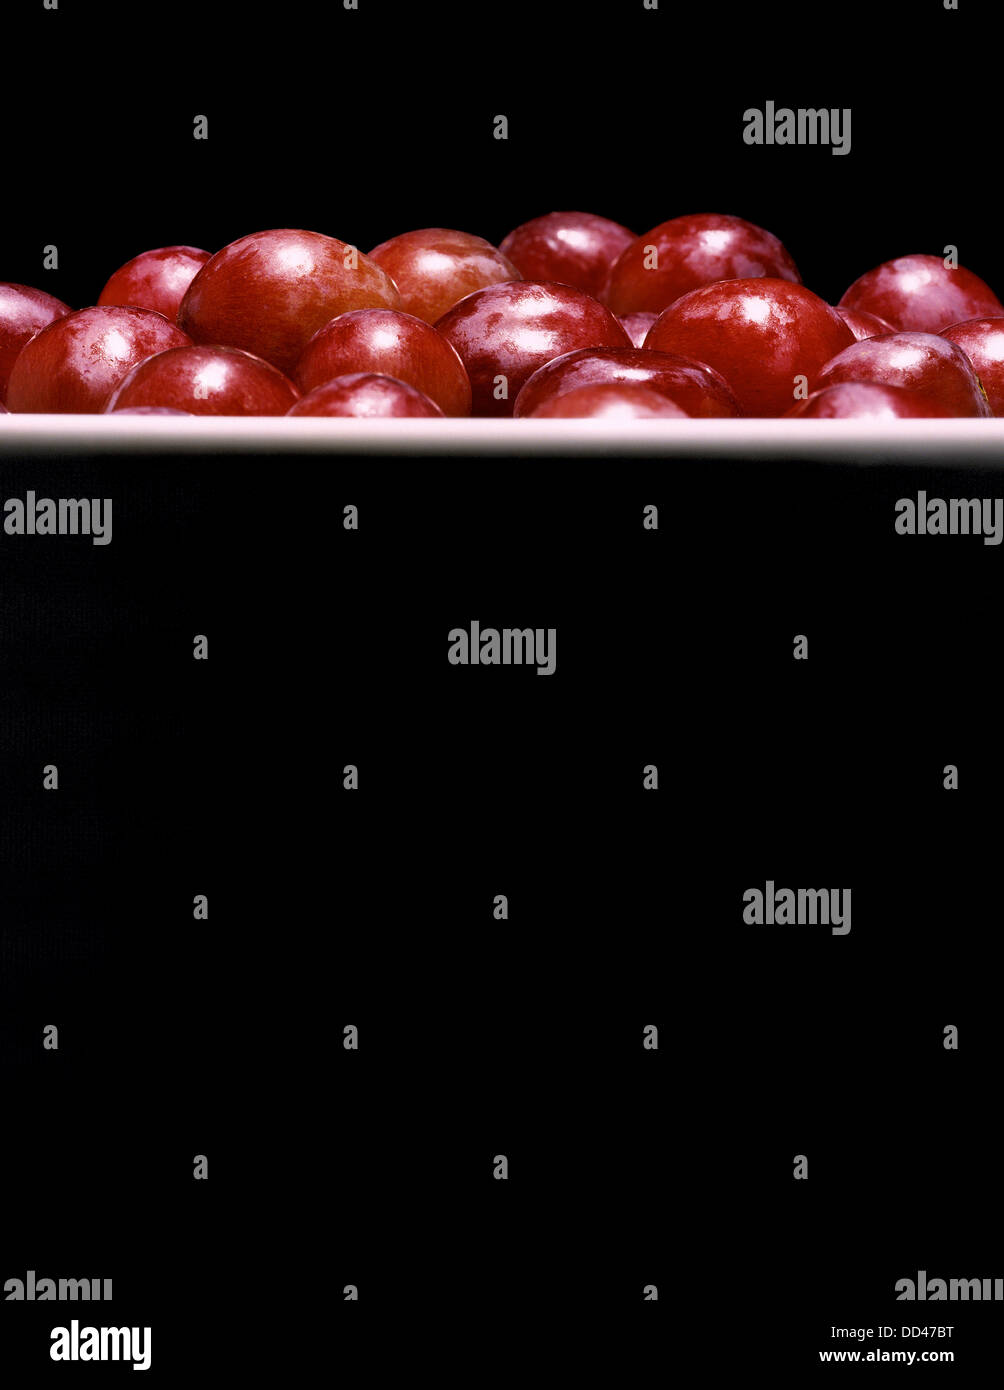 Rote Trauben in eine Schüssel geben. Dramatische Beleuchtung und interessante vertikale Zusammensetzung. Stockfoto